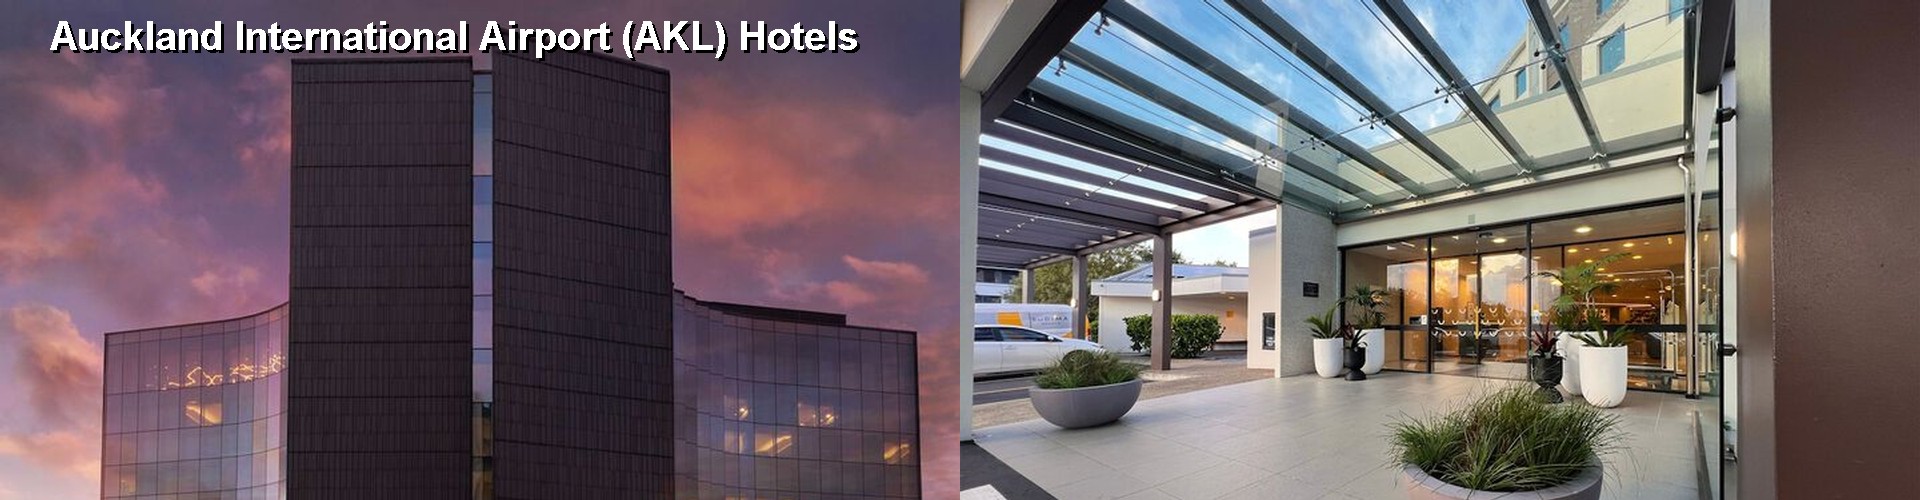 5 Best Hotels near Auckland International Airport (AKL)